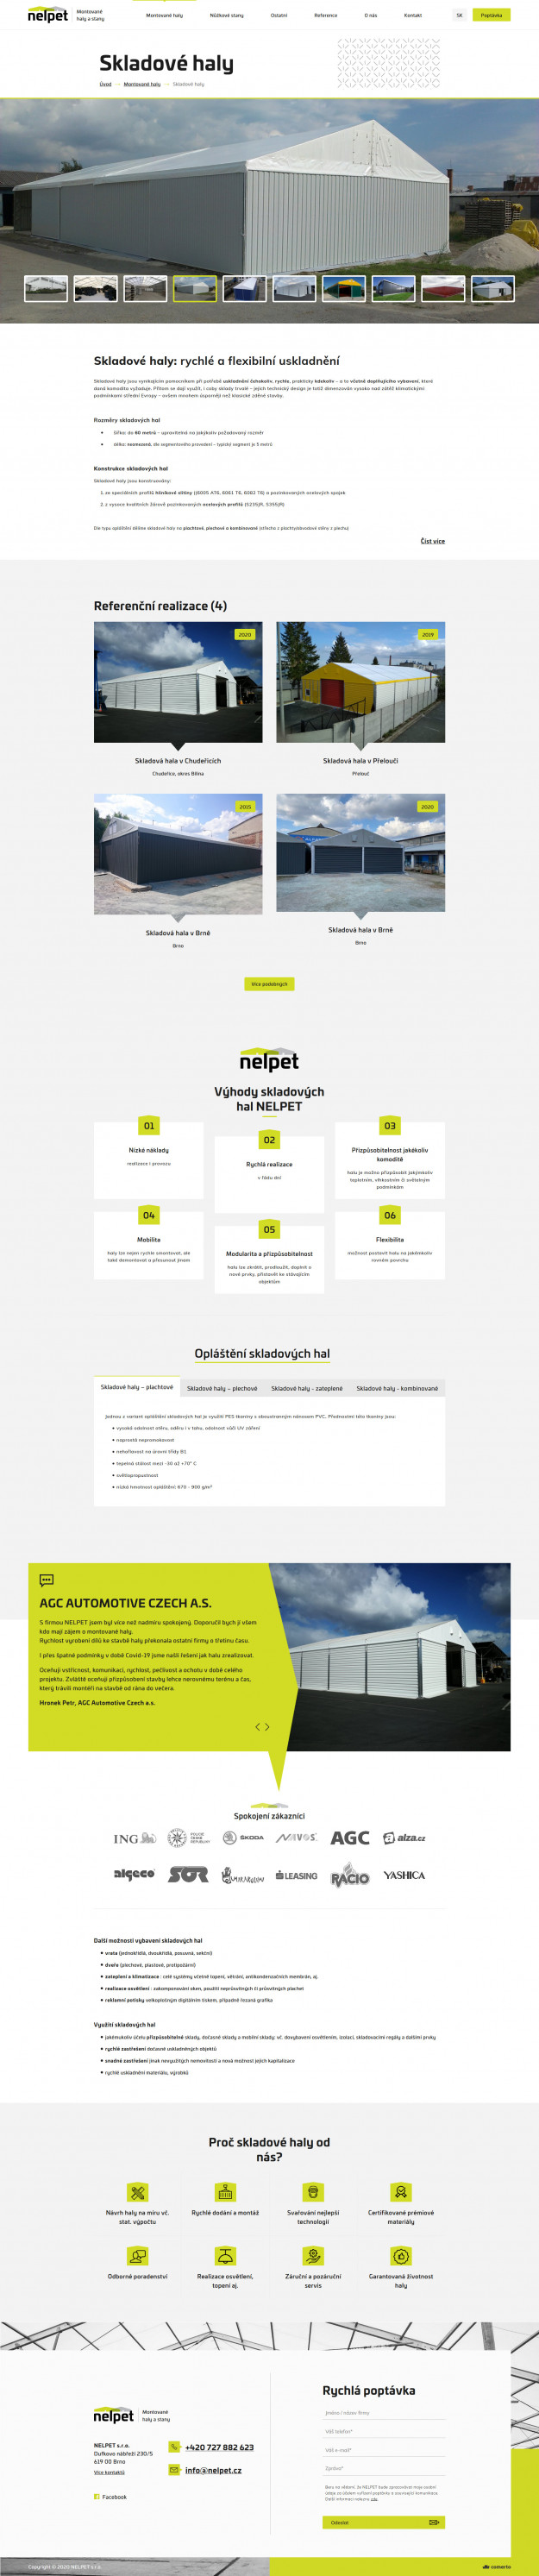 Tvorba nového webu Nelpet - Screenshot